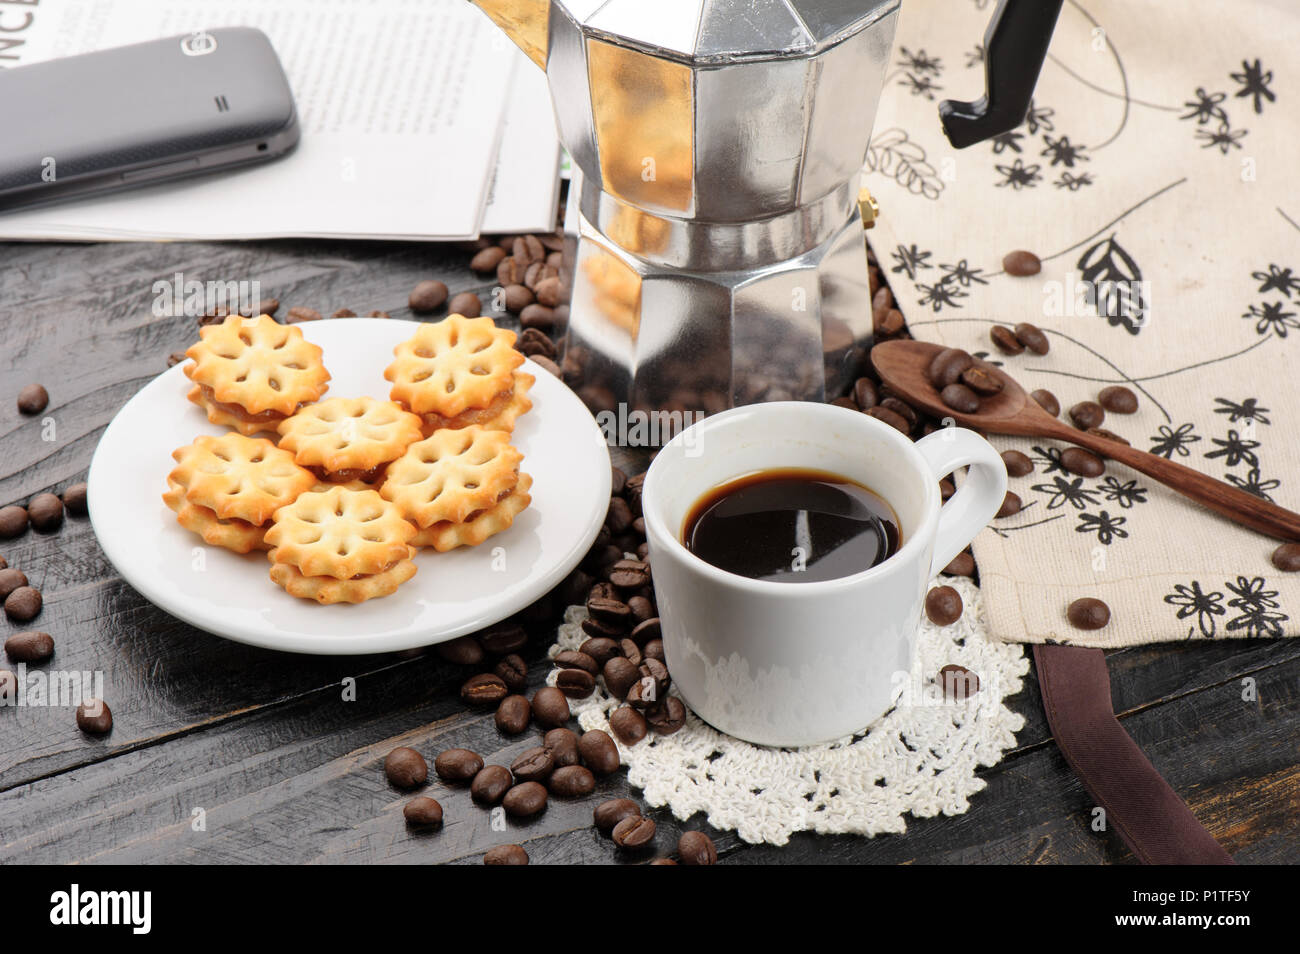 Gli amanti del caffe' concetto, una tazza di caffè espresso Foto Stock